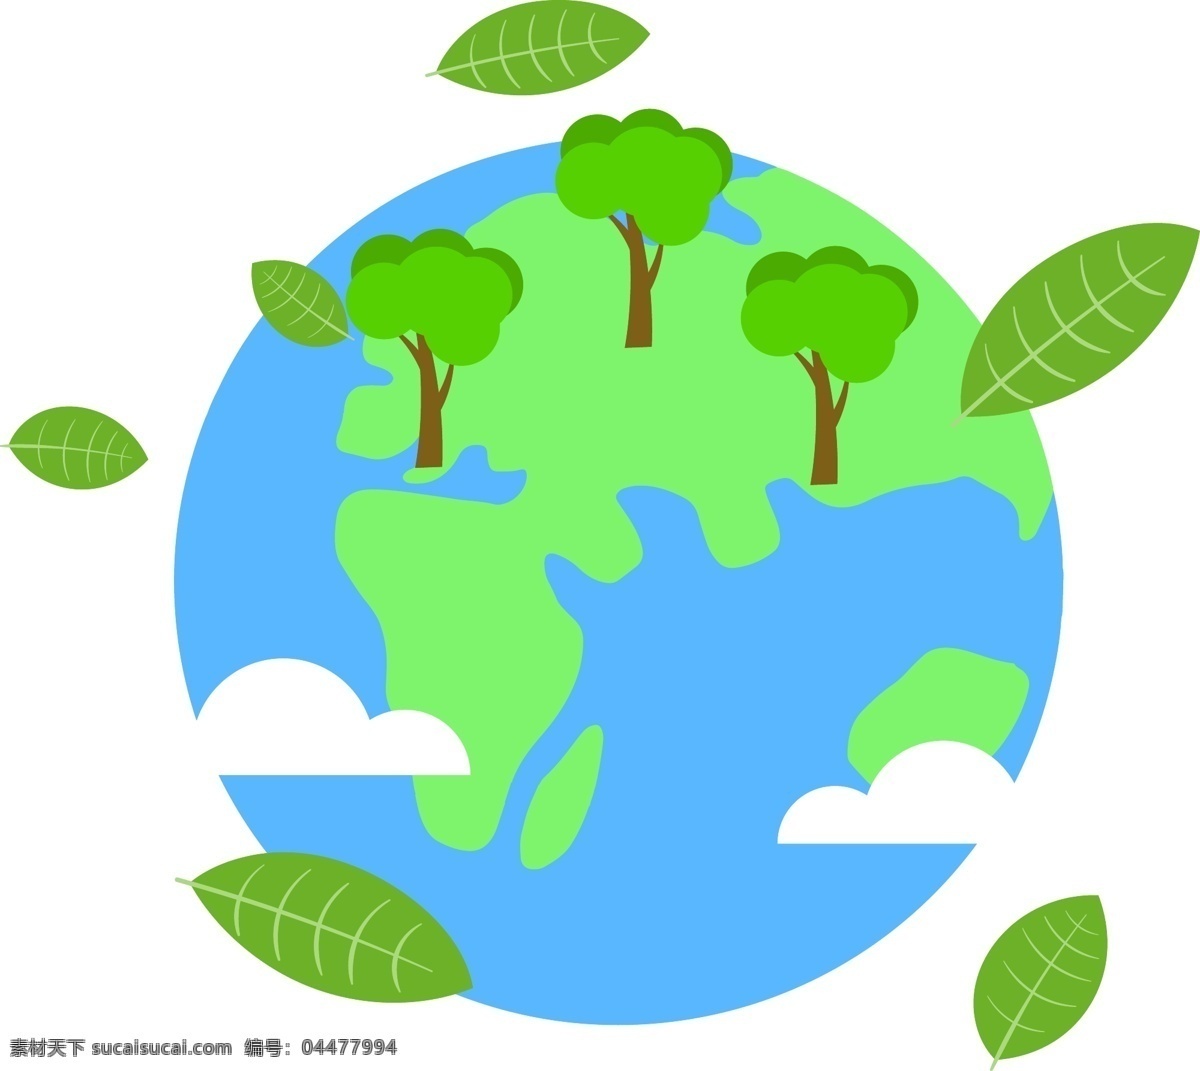 卡通 风格 绿色 世界 地球日 元素 未来 环保 科学 再生能源 绿叶 维护 护理 爱护 国家 宇宙 生命 周期 节日 联合国 地球